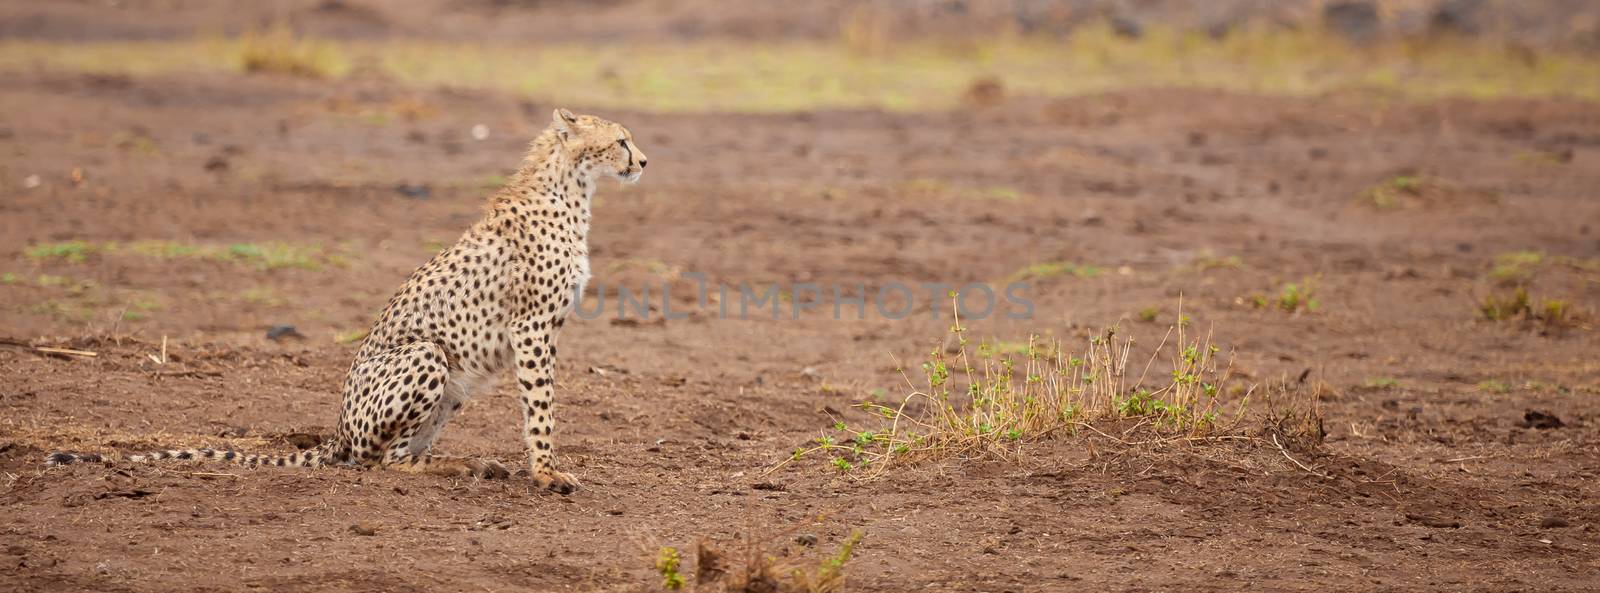 a gepard is sitting, safari in Kenya by 25ehaag6